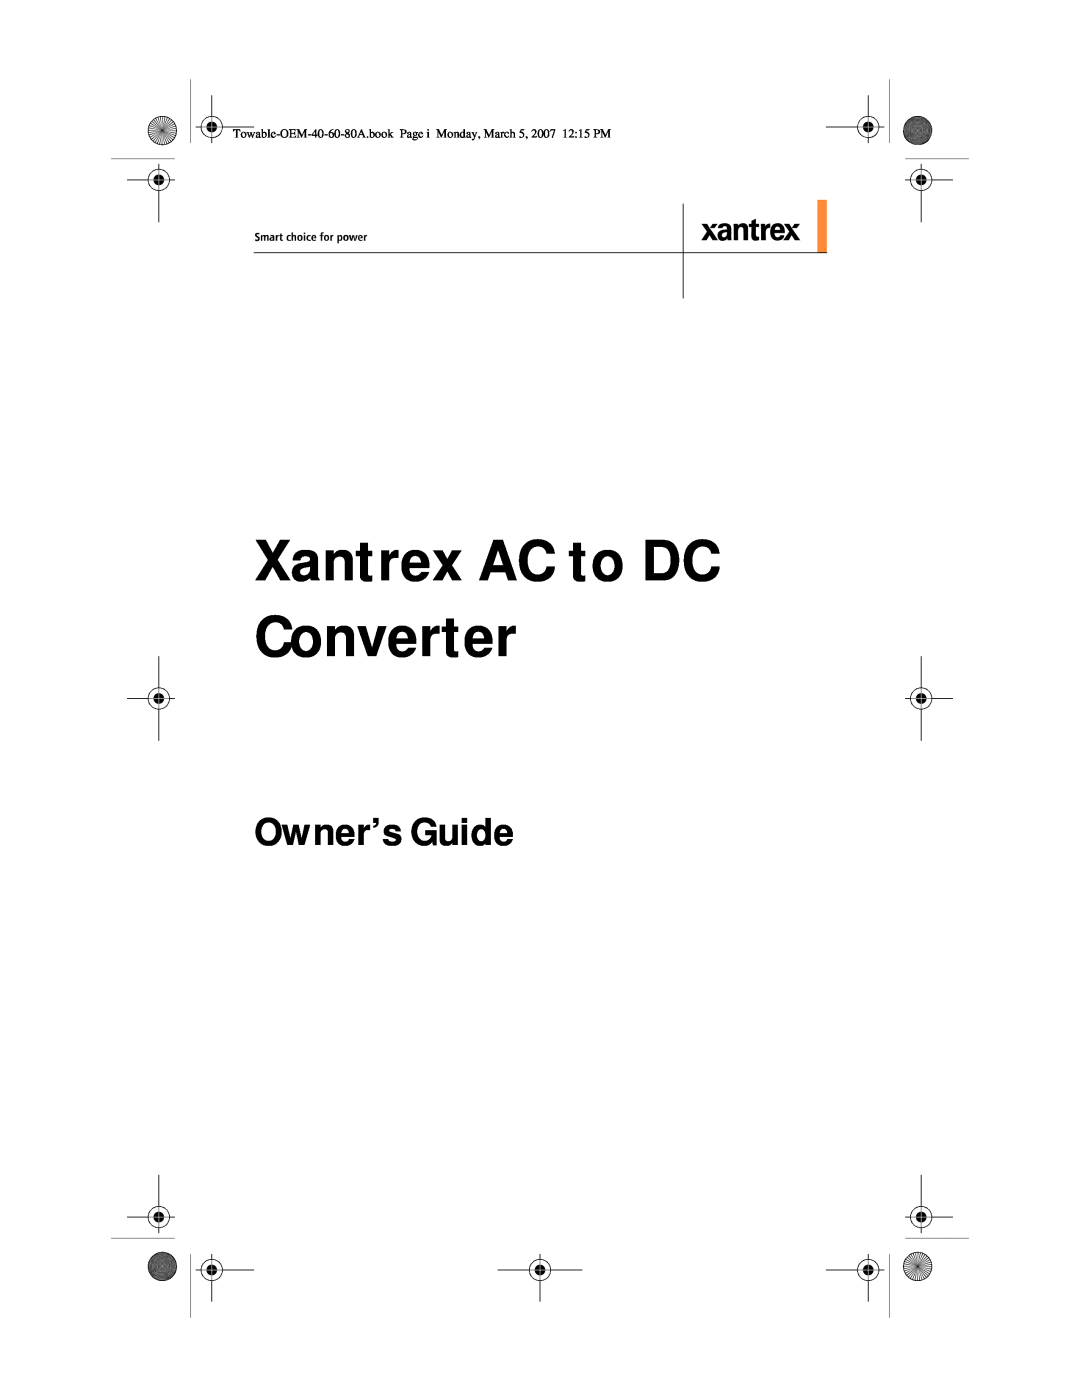 Xantrex Technology 40 A (XADC-40), 60 A (XADC-60), 80 A (XADC-80) manual Owner’s Guide, Xantrex AC to DC Converter 